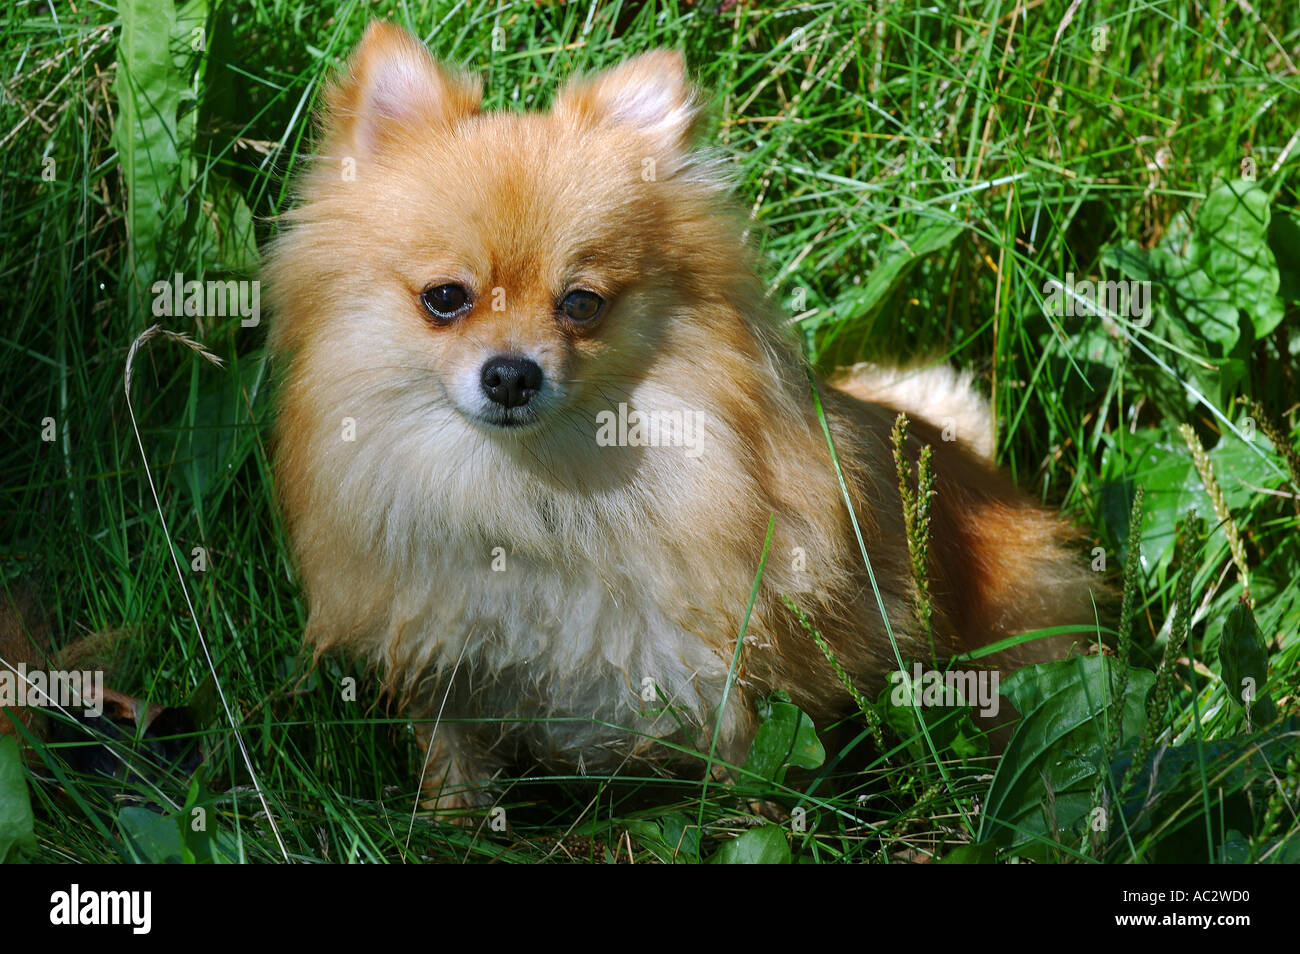 Kleiner foxy Pommerschen Hund in hohe Gräser Stockfotografie - Alamy